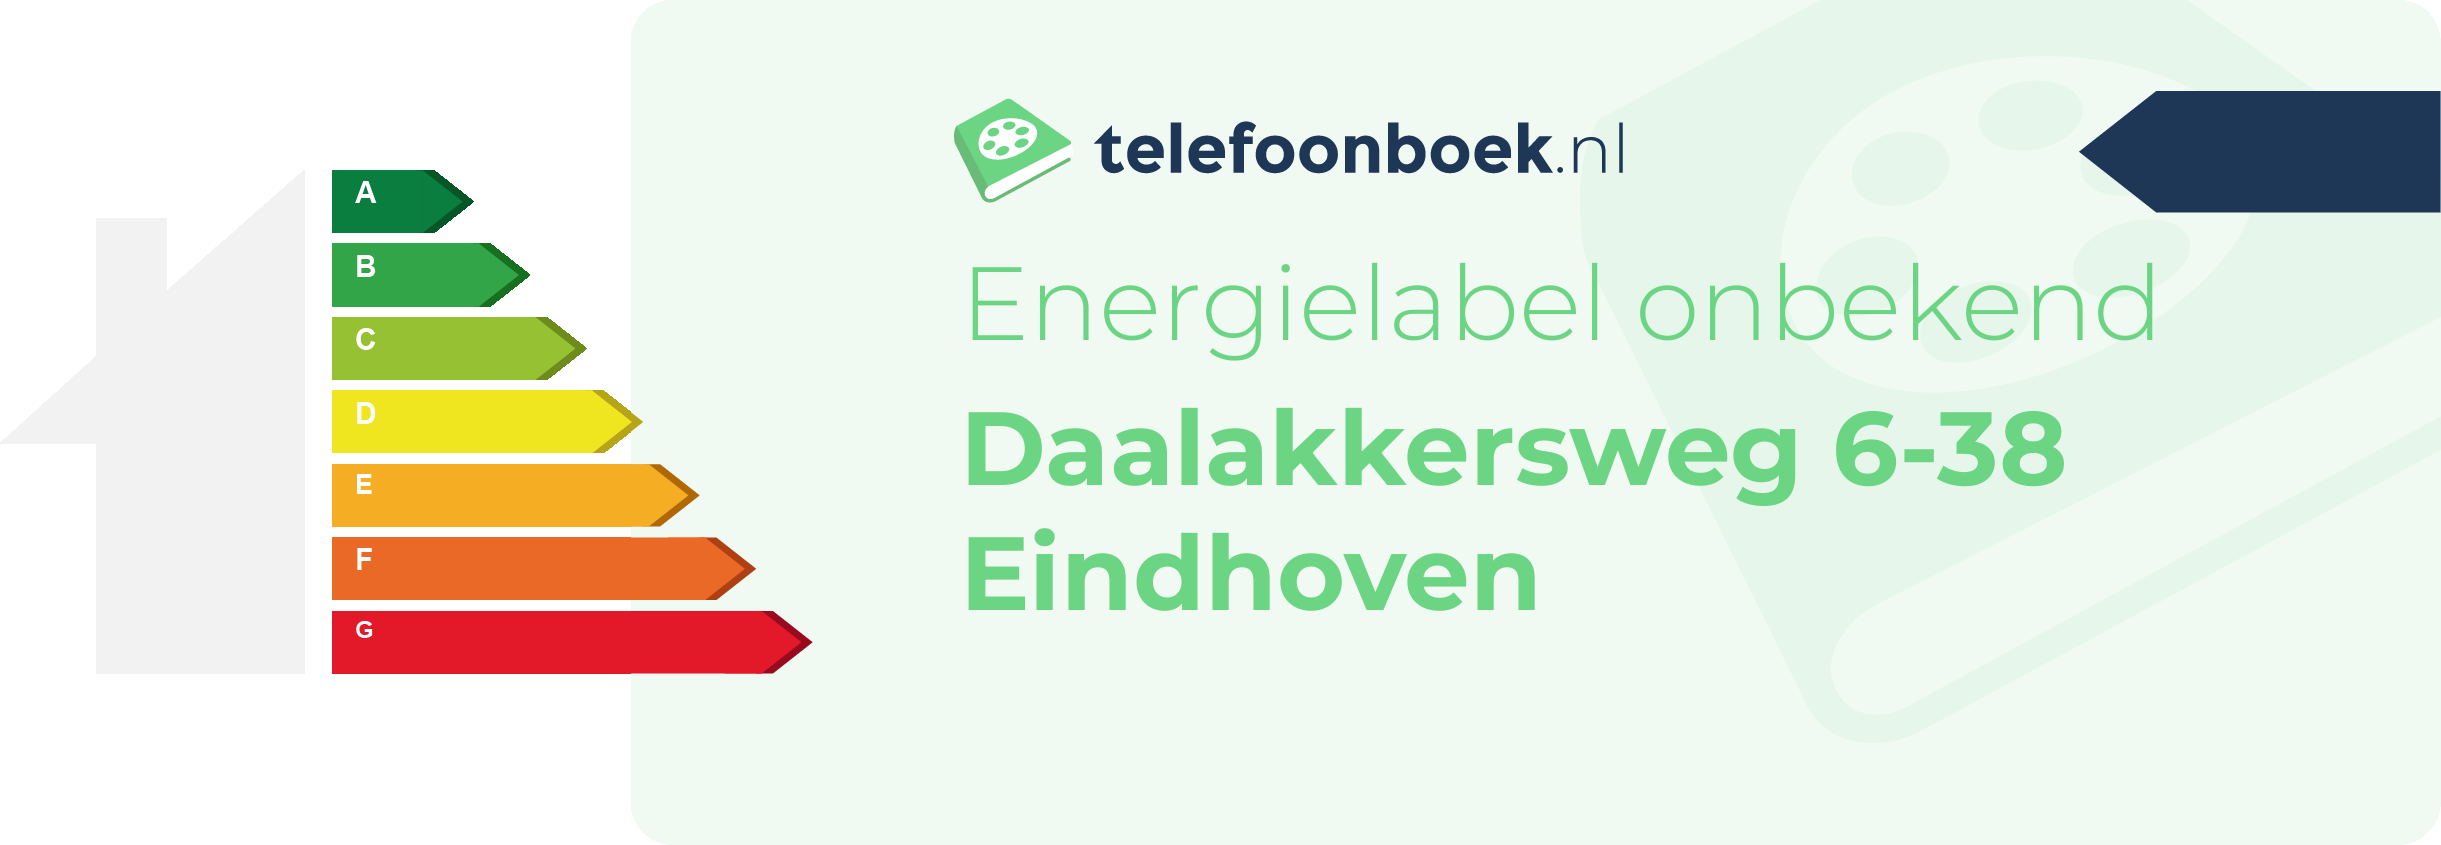 Energielabel Daalakkersweg 6-38 Eindhoven